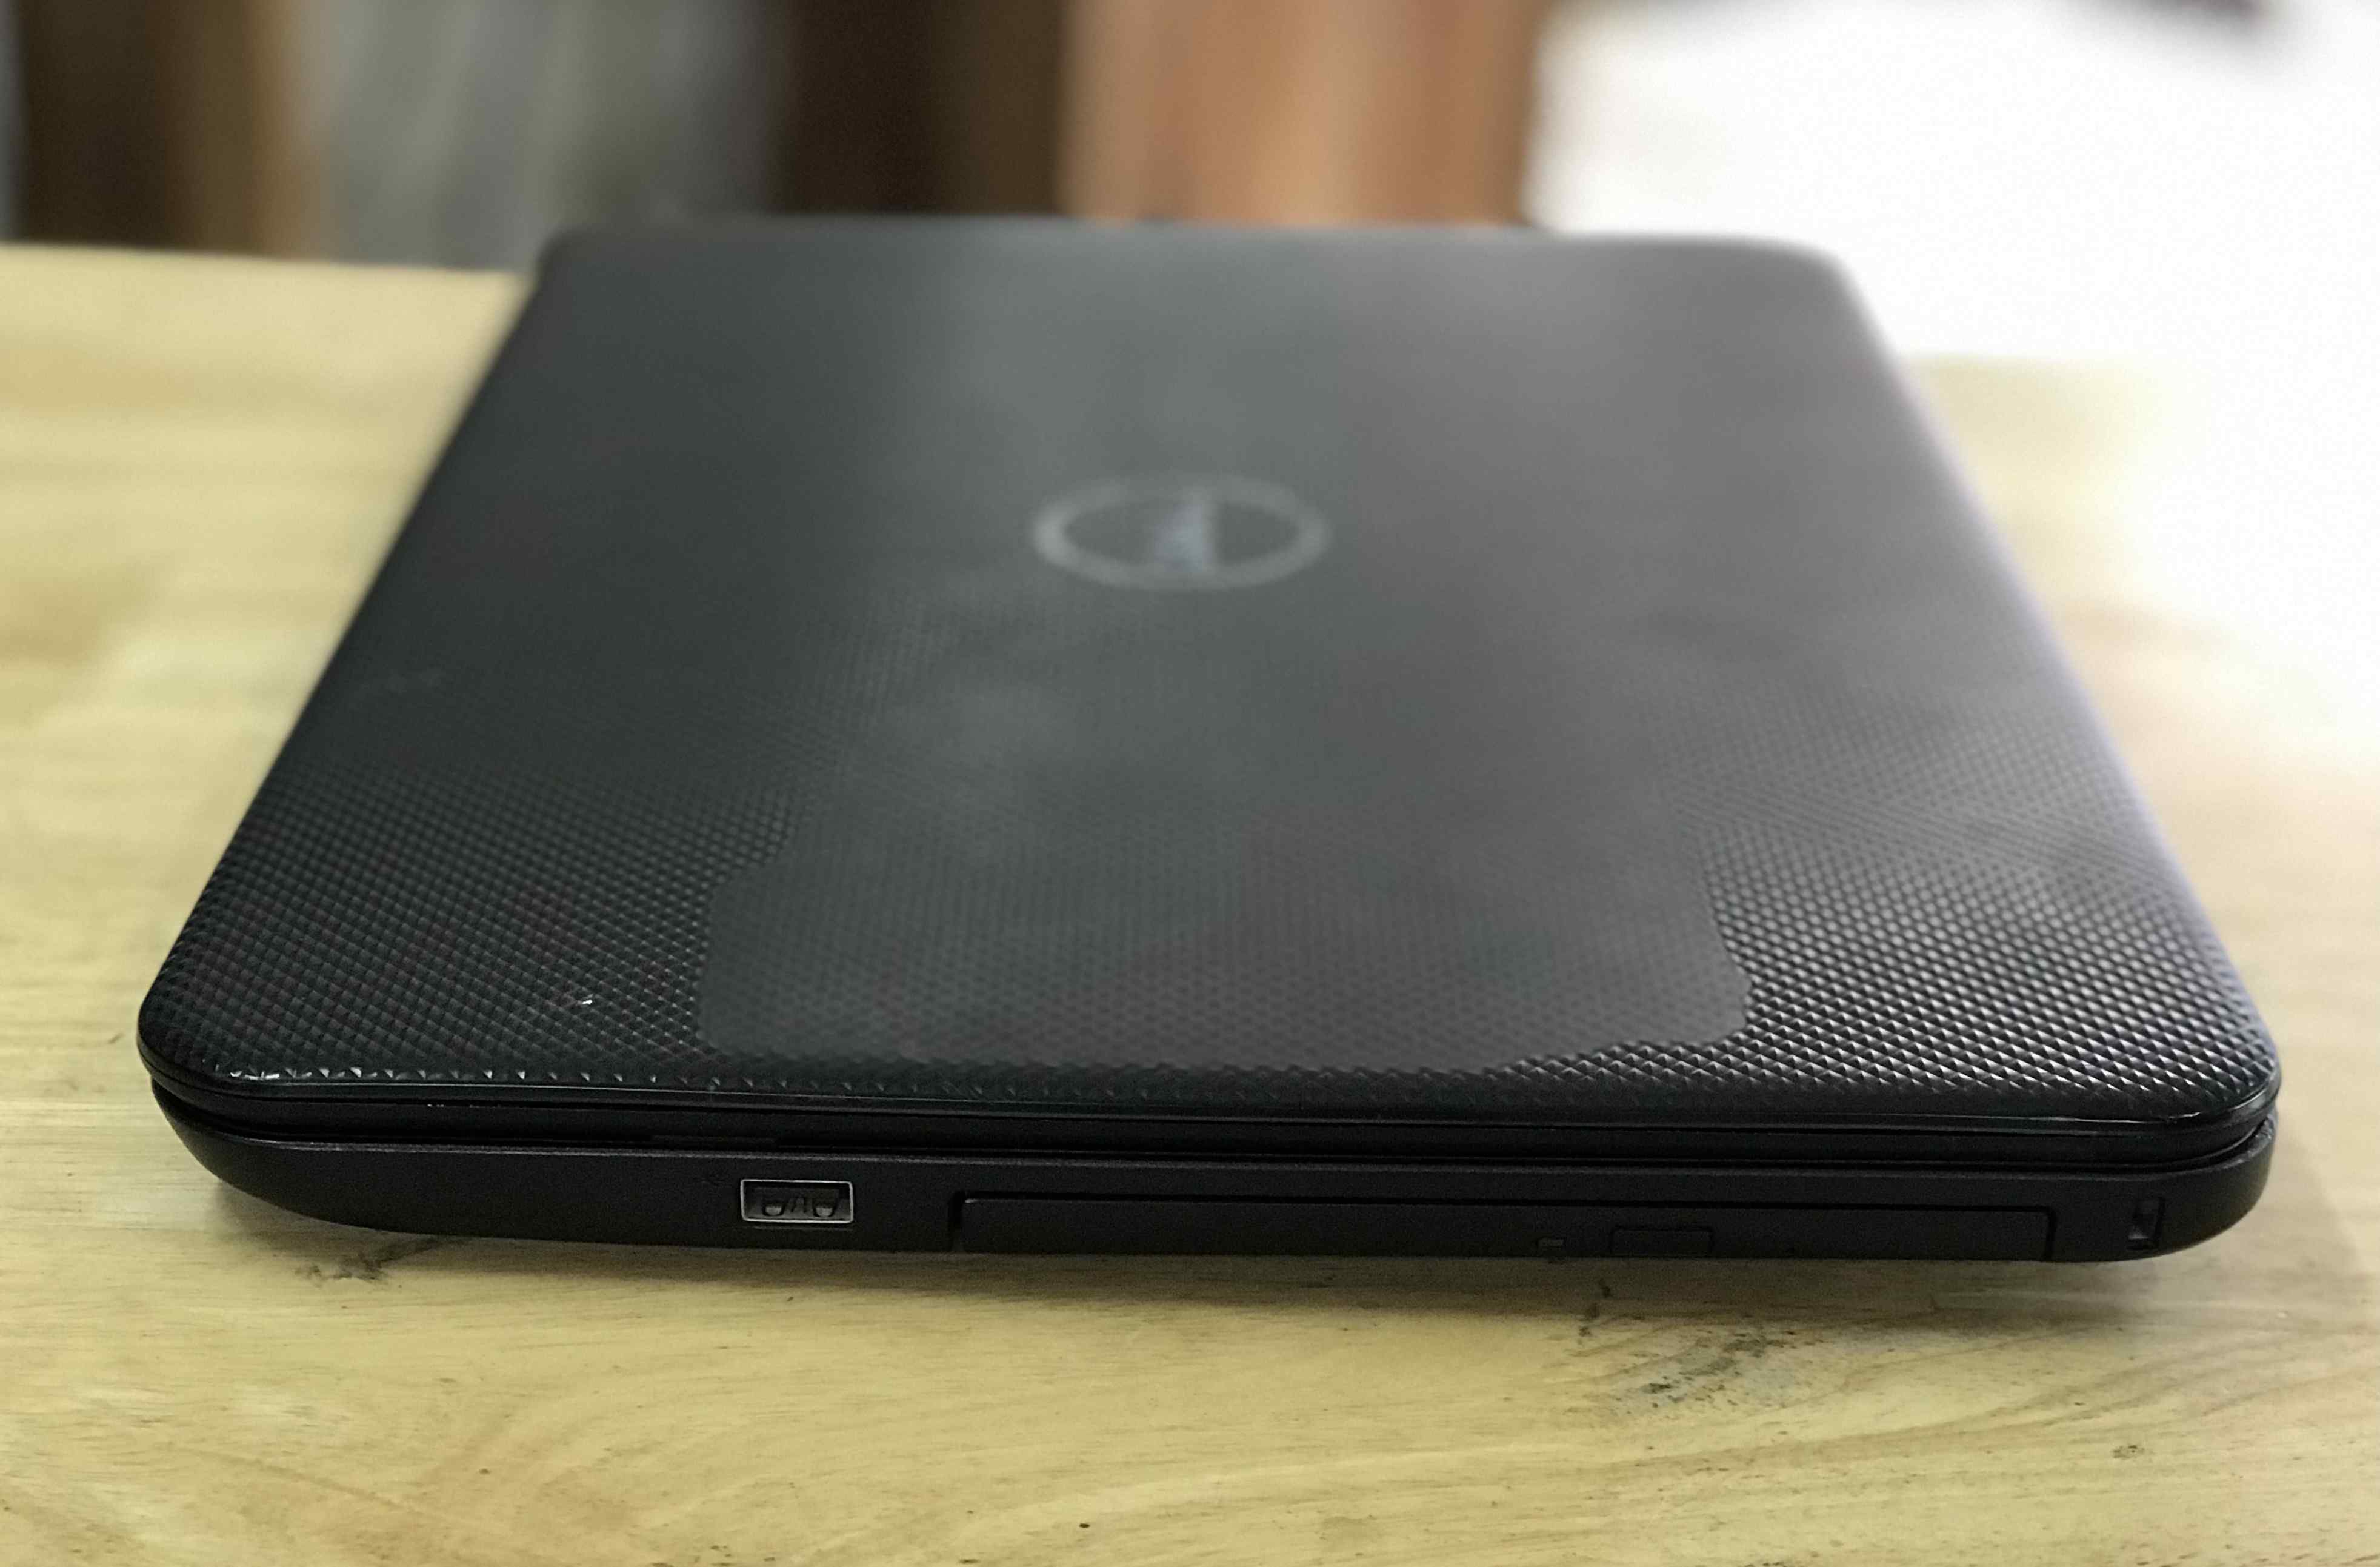 bán laptop cũ dell inspiron 3521 giá rẻ tại hà nội